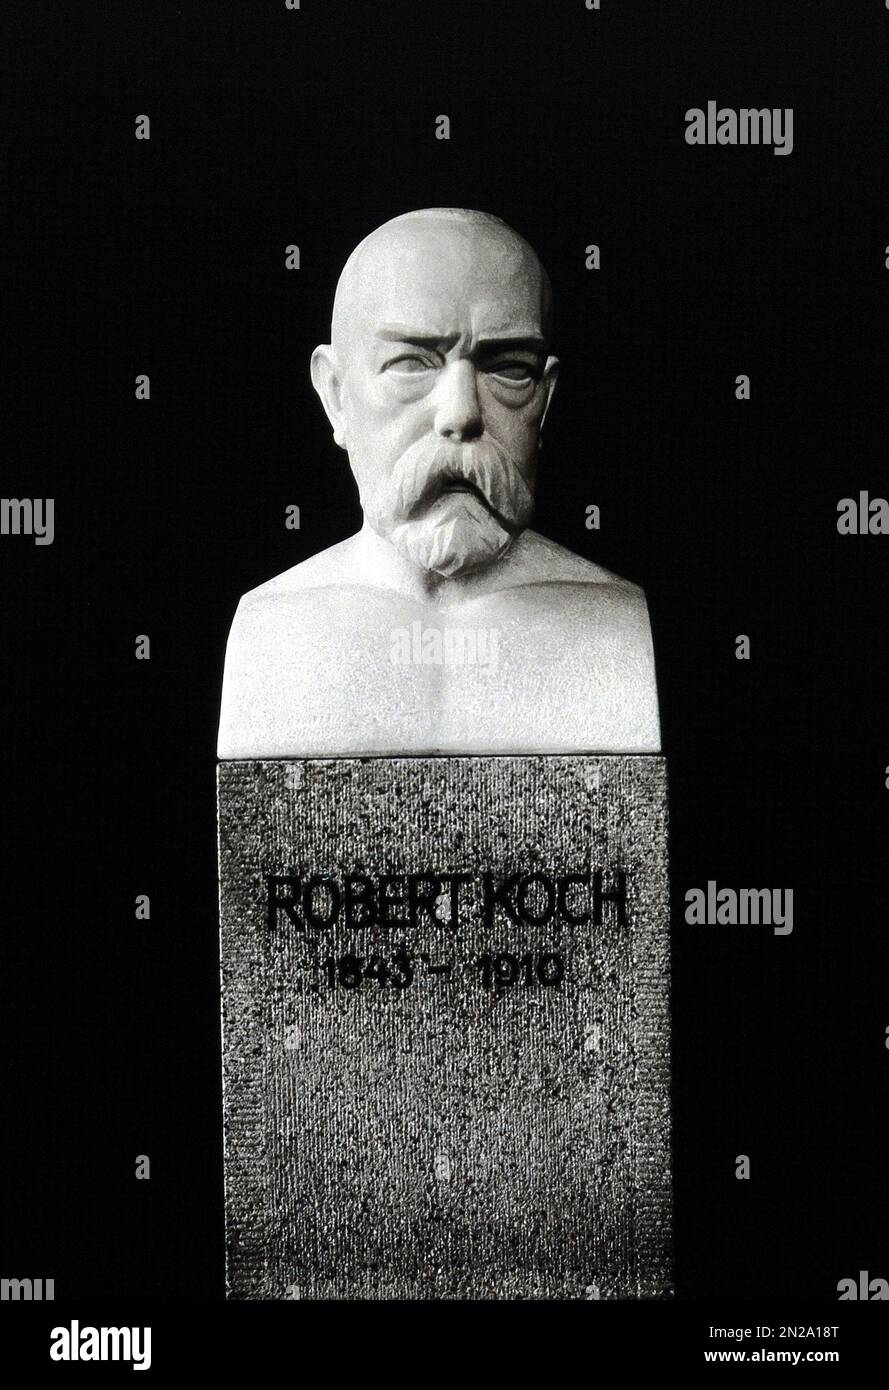 1920 Ca , DEUTSCHLAND : das dem deutschen Doktor ROBERT KOCH ( 1843 - 1910 ) gewidmete aber , unbekannter Autor und Standort . Er wurde berühmt für die Entdeckung des Anthrax-Bazillus ( 1877 ), des Tuberkulose-Bazillus ( 1882 ) und der Cholera vibrio ( 1883 ) sowie für seine Entwicklung von Kochs Postulaten. 1905 erhielt er den NOBELPREIS für Physiologie oder Medizin für seine Tuberkulosebefunde . Er gilt als einer der Gründer der Bakteriologie Unbekannter Bildhauer. - BATTERIOLOGO - TBC - BATTERIOLOGIA - TUBERCOLOSI - ANTRACE - PREMIO NOBEL PER LA MEDICINA - VIROLOGIA - VIRUS - VIROLOGO - MEDICIN Stockfoto